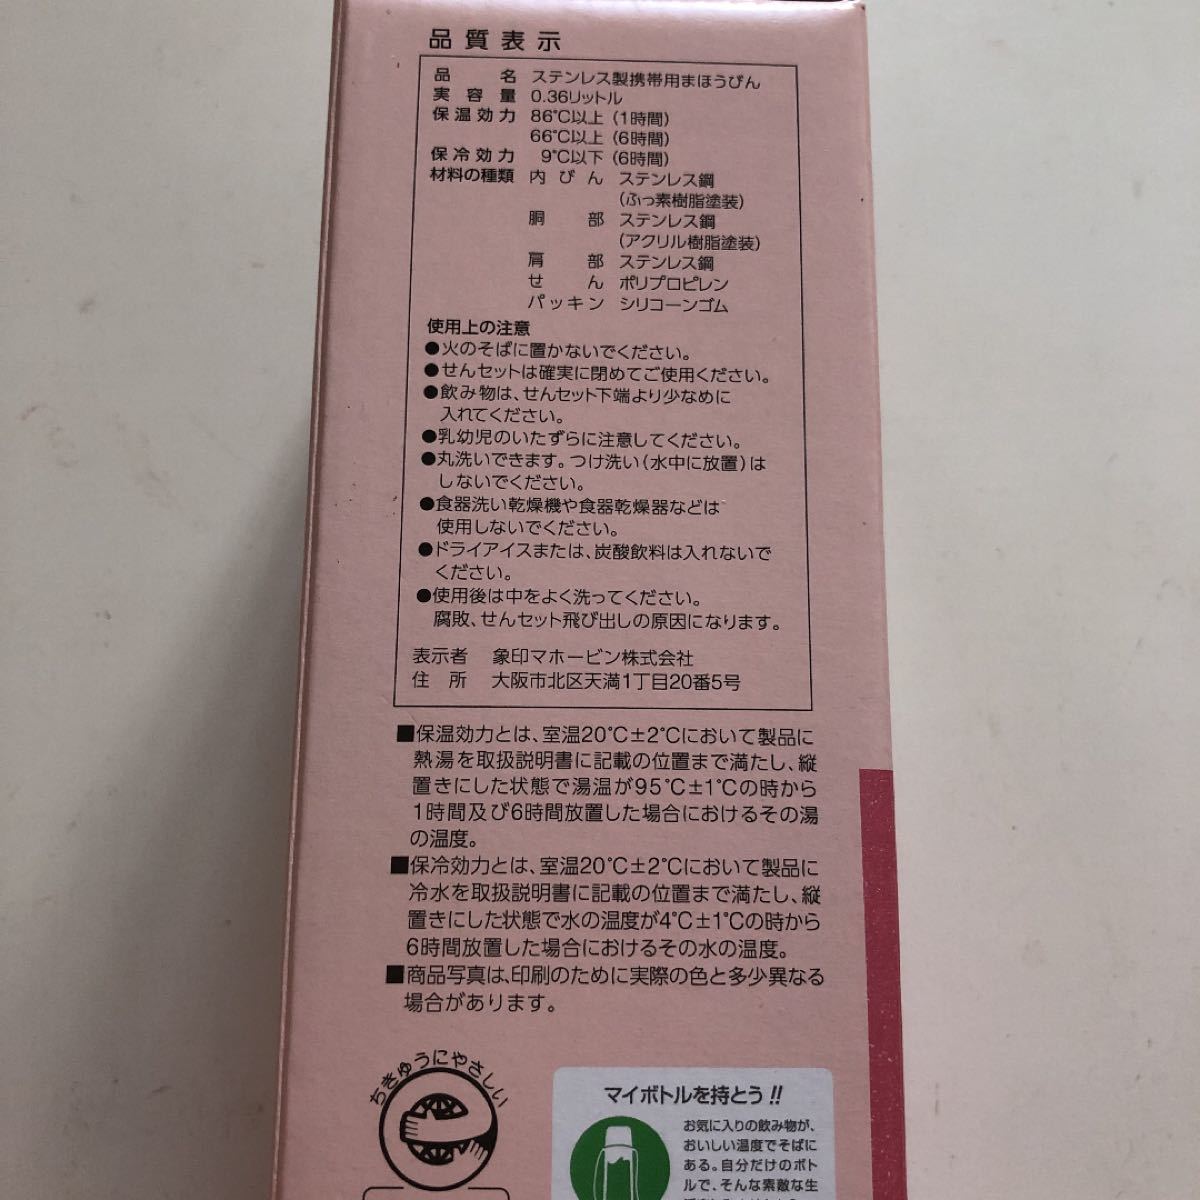 ZOJIRUSHI 象印 水筒 ステンレスマグ 360ml ピンク マグボトル